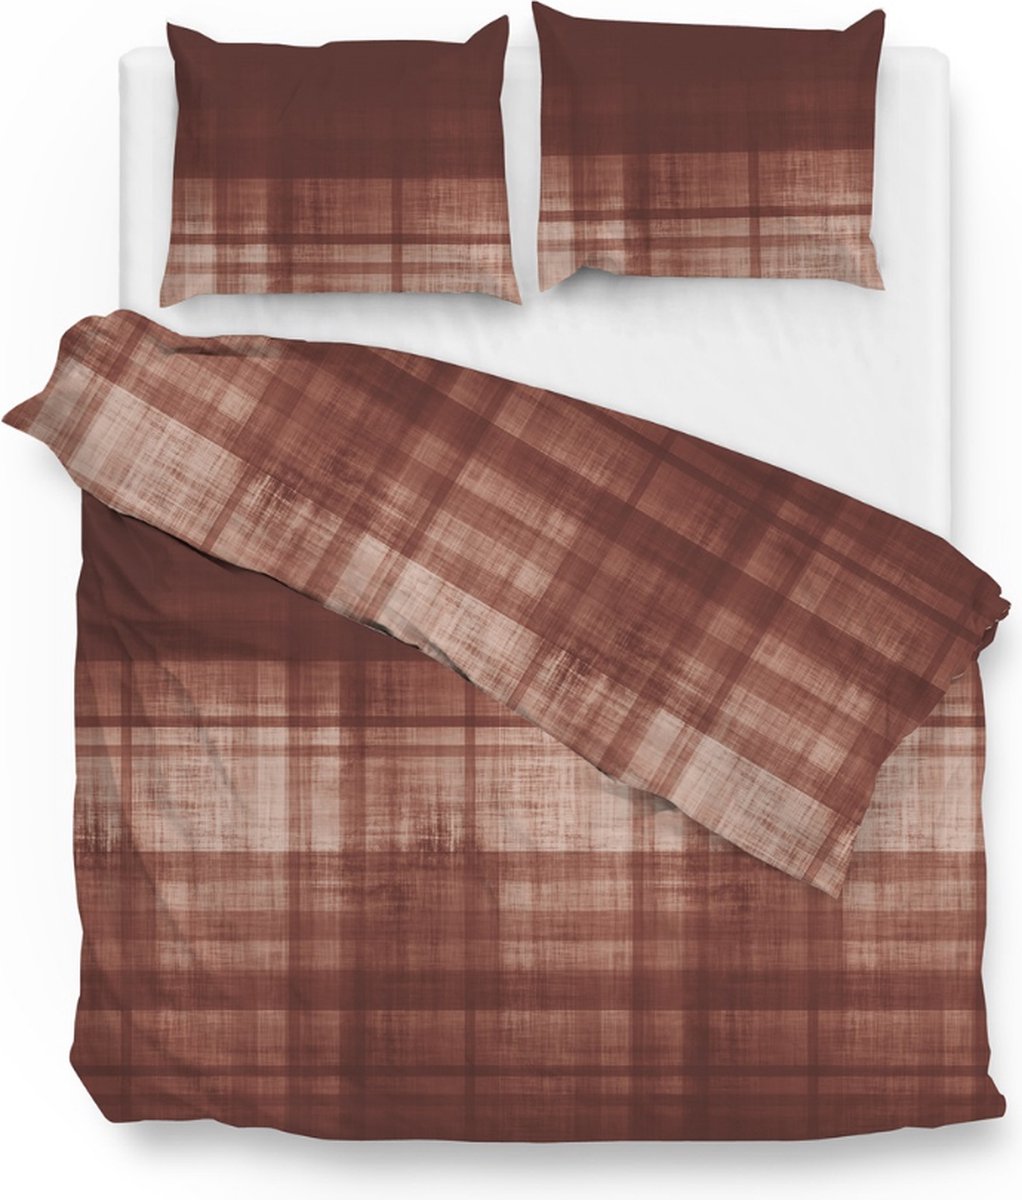 Warme flanel dekbedovertrek Duco Rood - lits-jumeaux (240x200/220) - hoogwaardig en zacht - ideaal tegen de kou